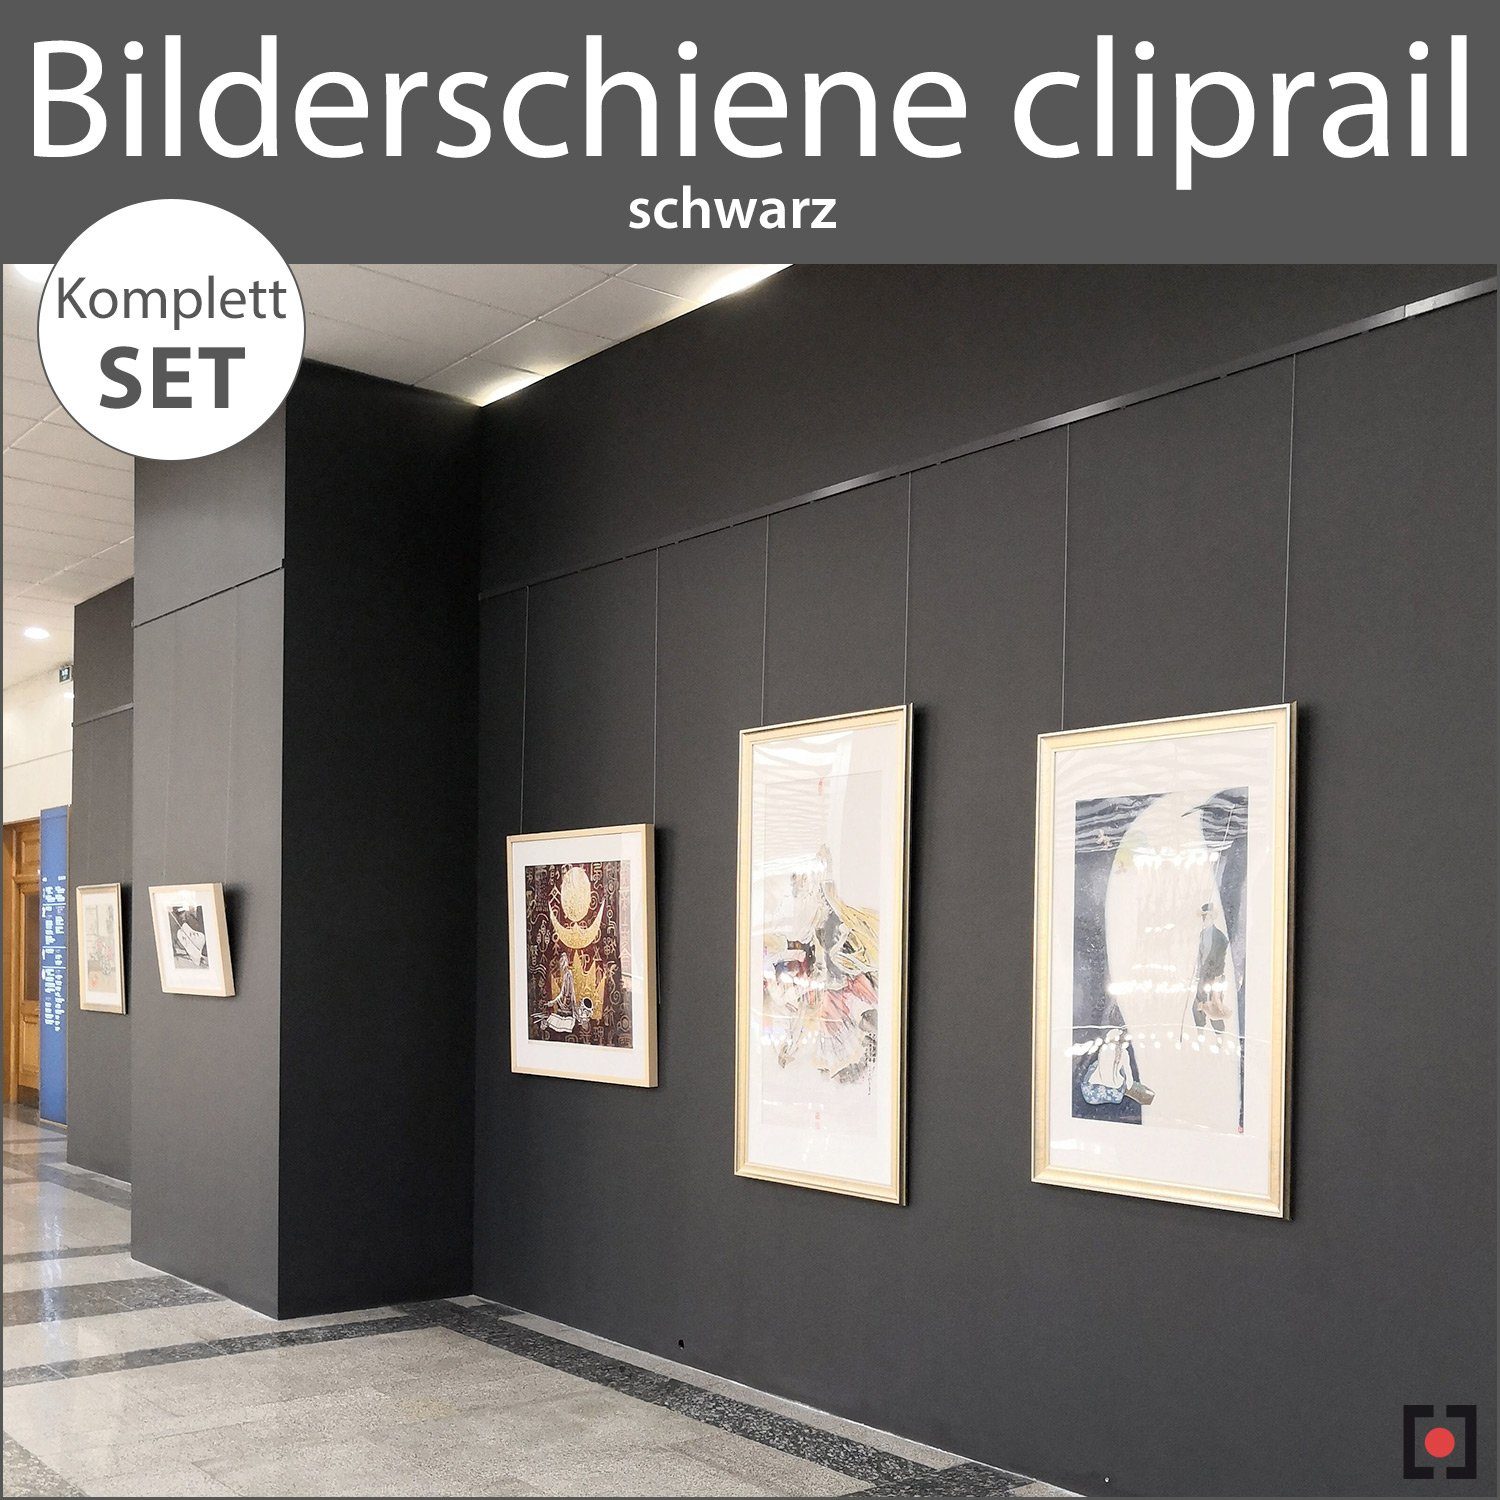 schwarz Komplett-Set STRÜSSMANN® Wandregal - schwarz Bilderschienen cliprail, Wandschienen